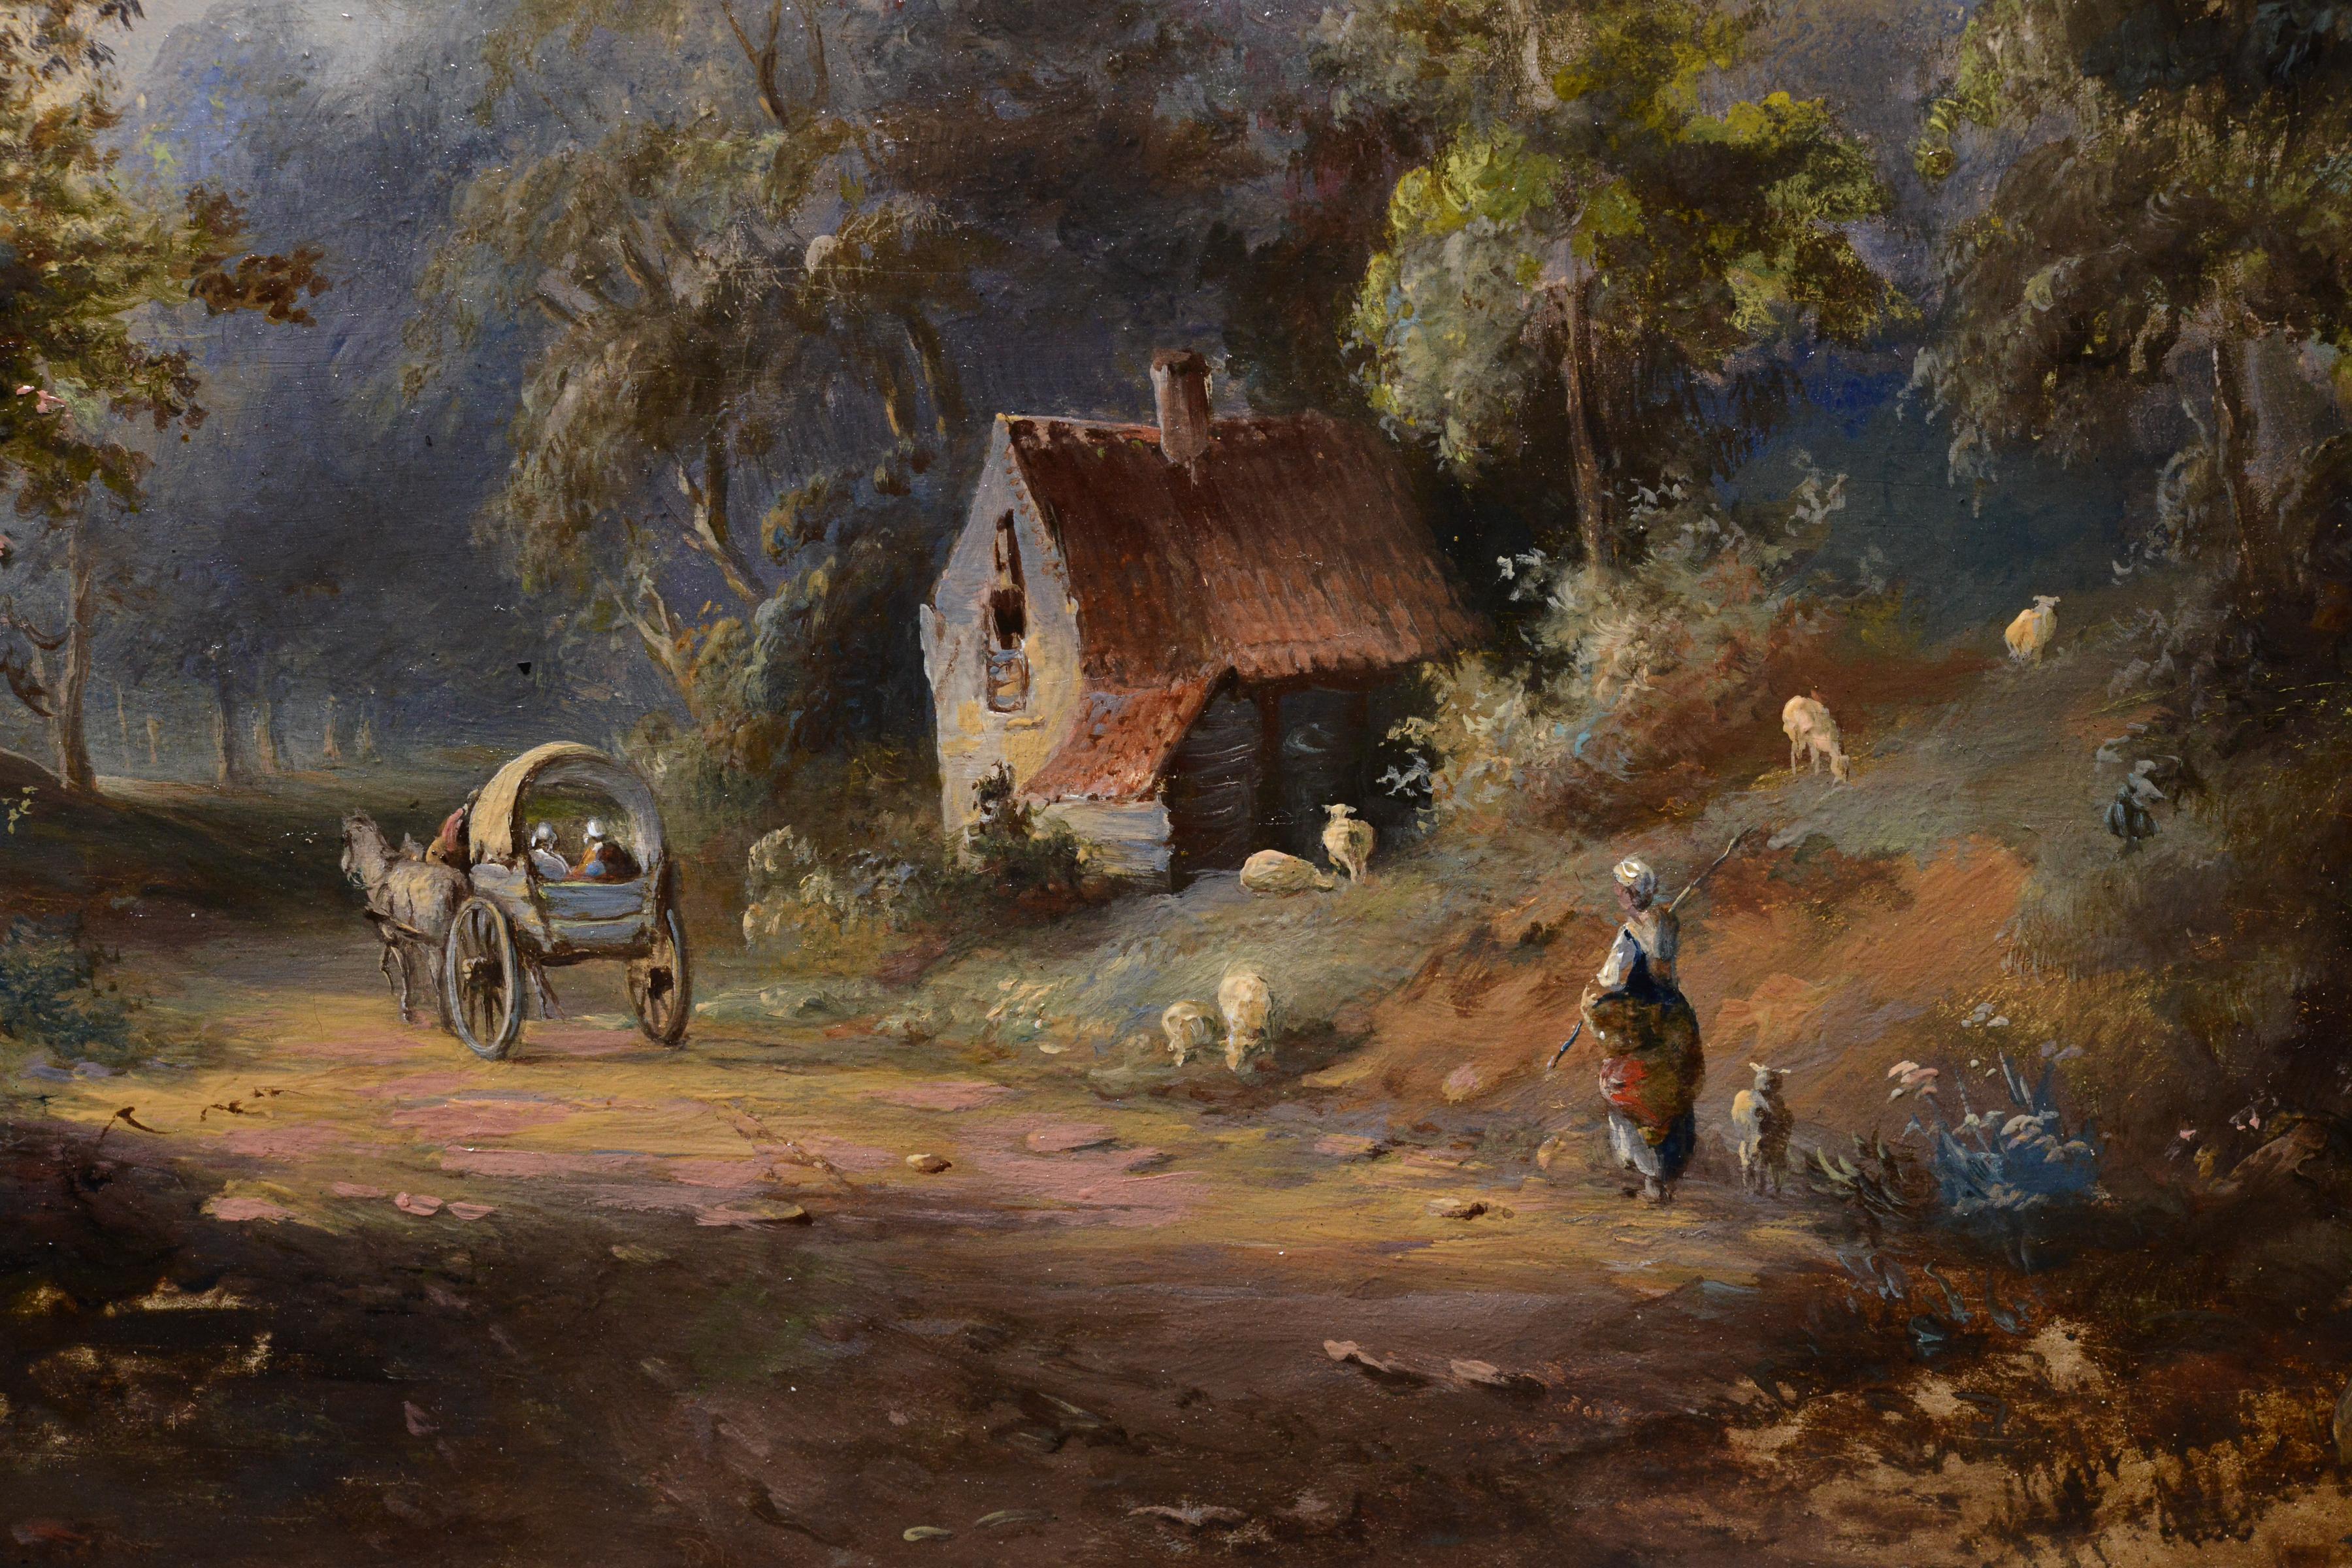 Pastoral Country Landscape Reisende auf einer Waldstraße, Ölgemälde, 19. Jahrhundert (Realismus), Painting, von Pavel Pavlovich Dzhogin